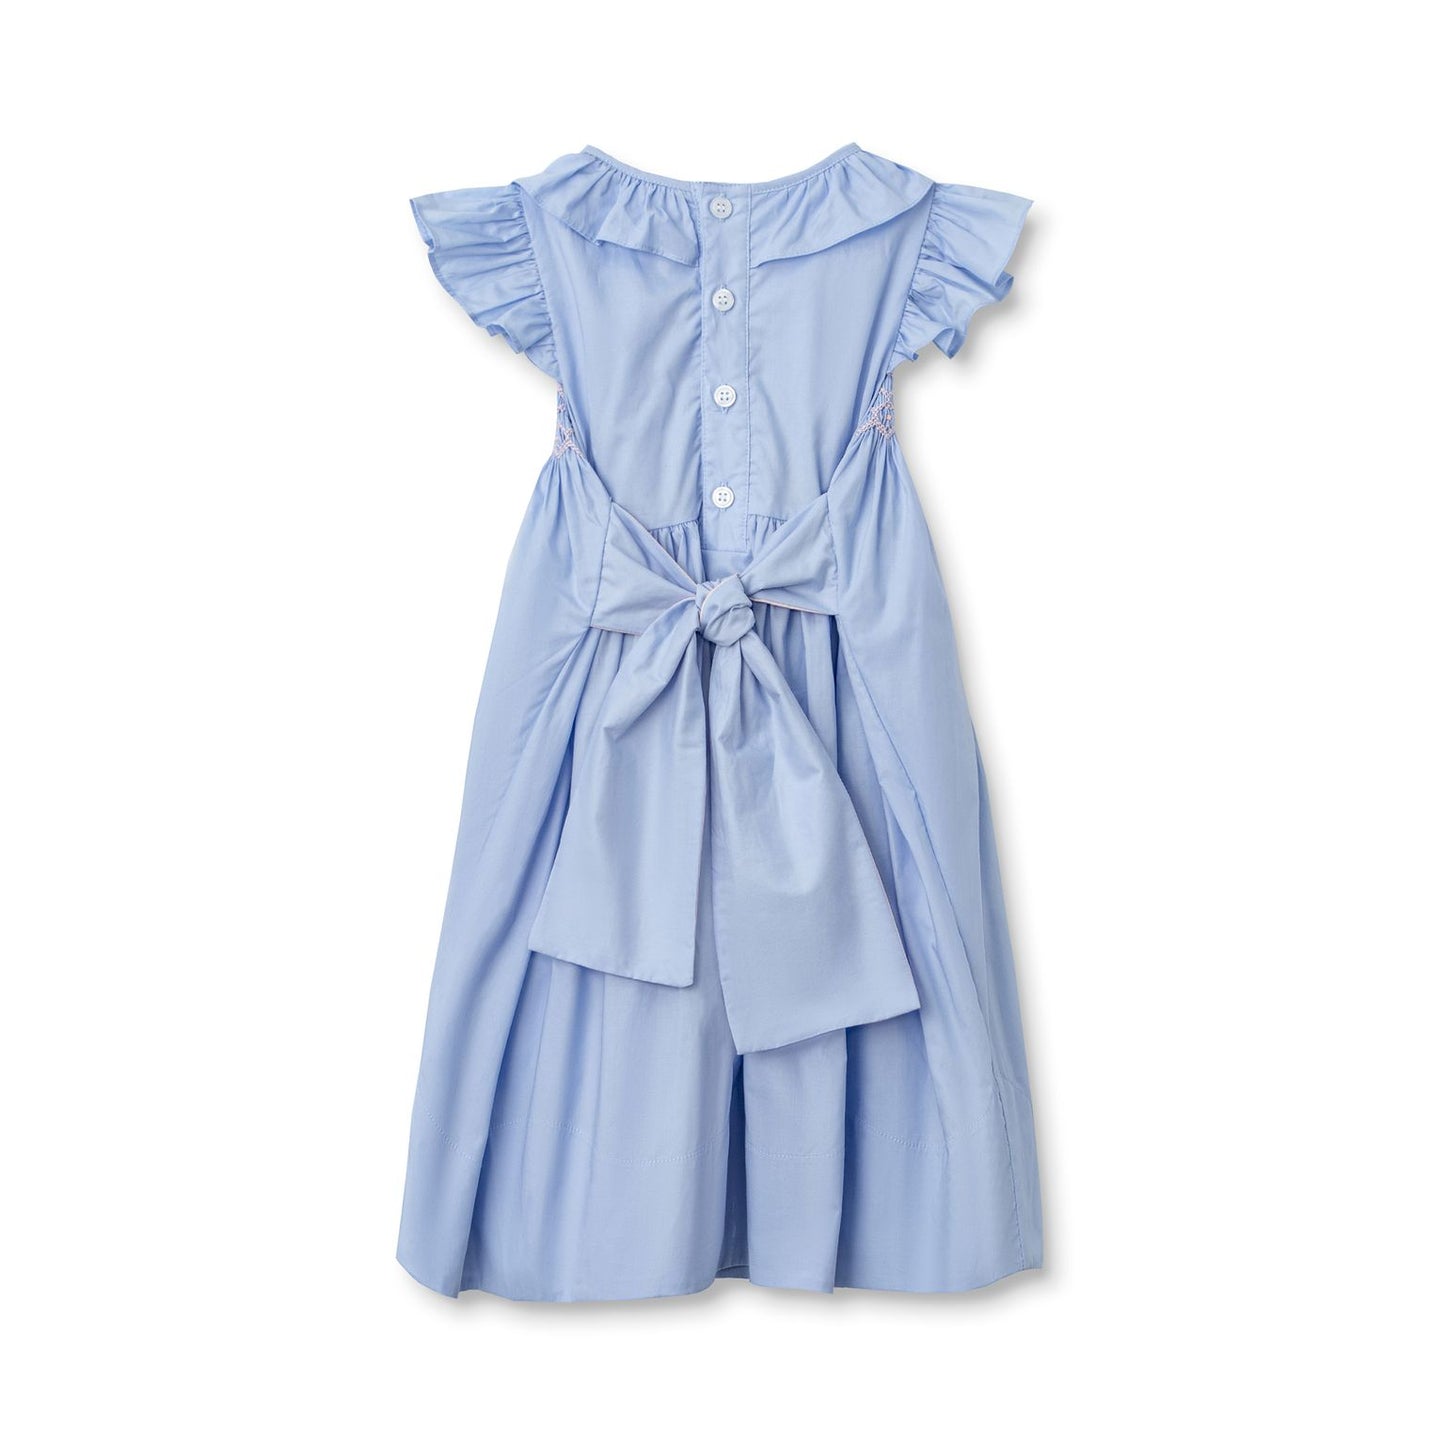 Nanducket - Sarah Sloane Smocked Dress Blue/Pink